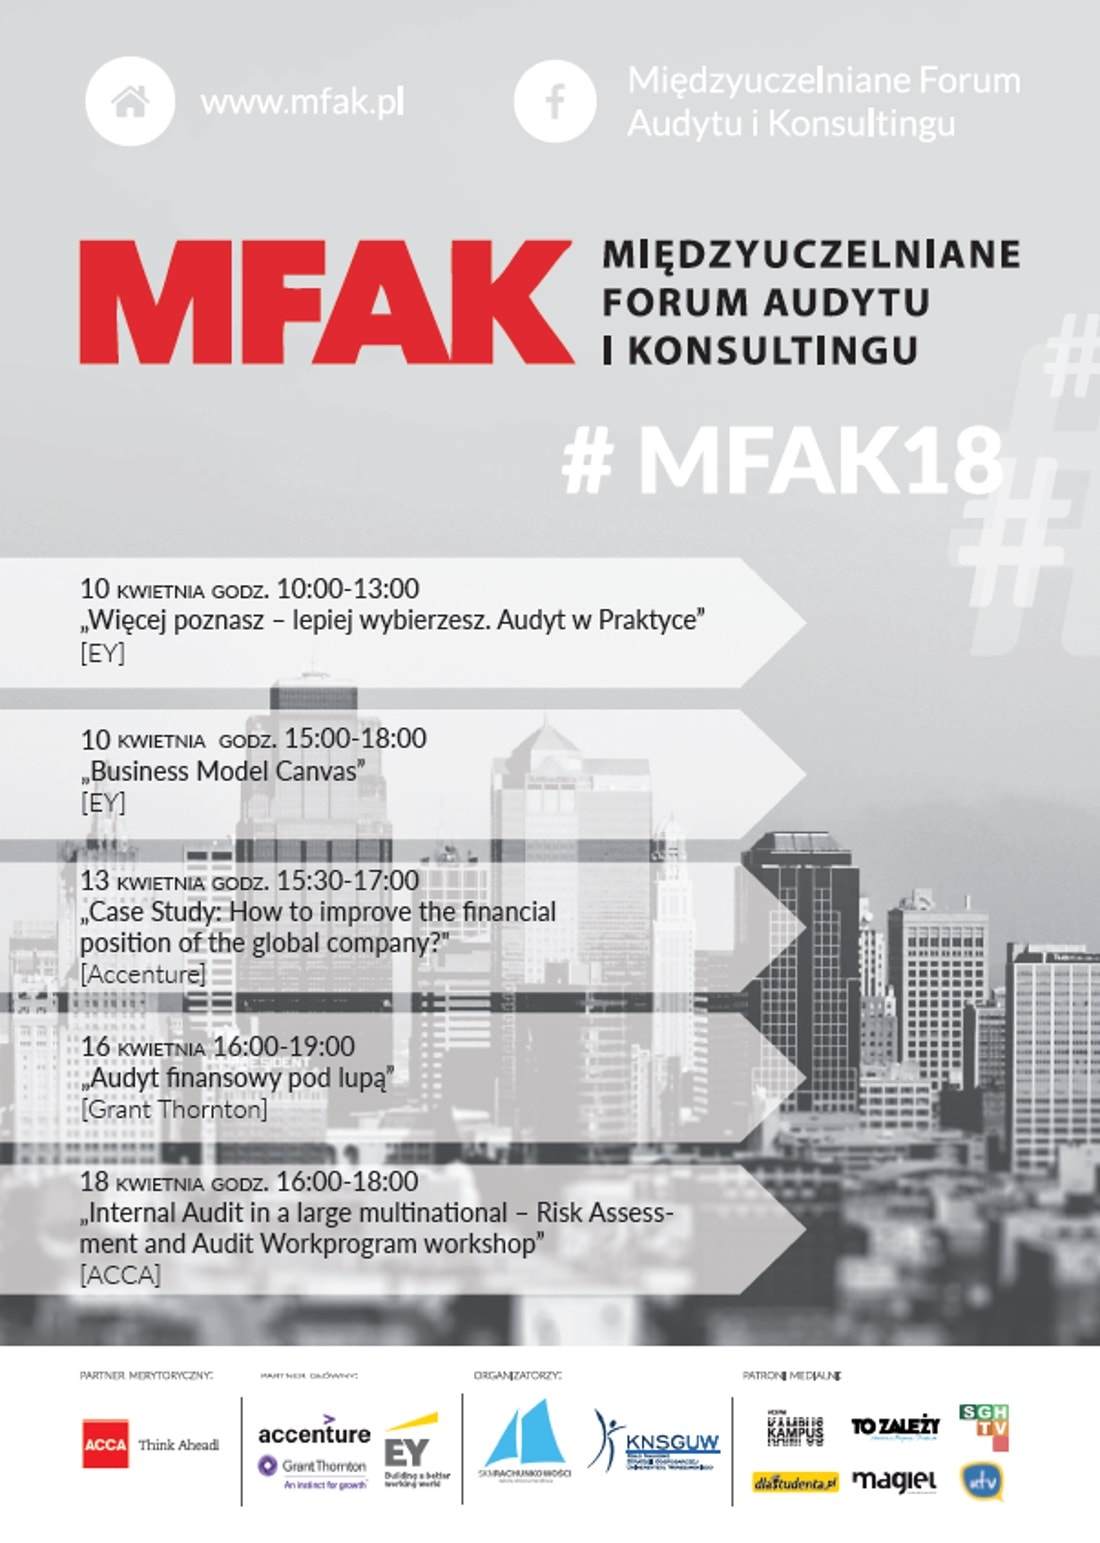 MFAK odbędzie się w dniach 10-18 kwietnia 2018 roku.